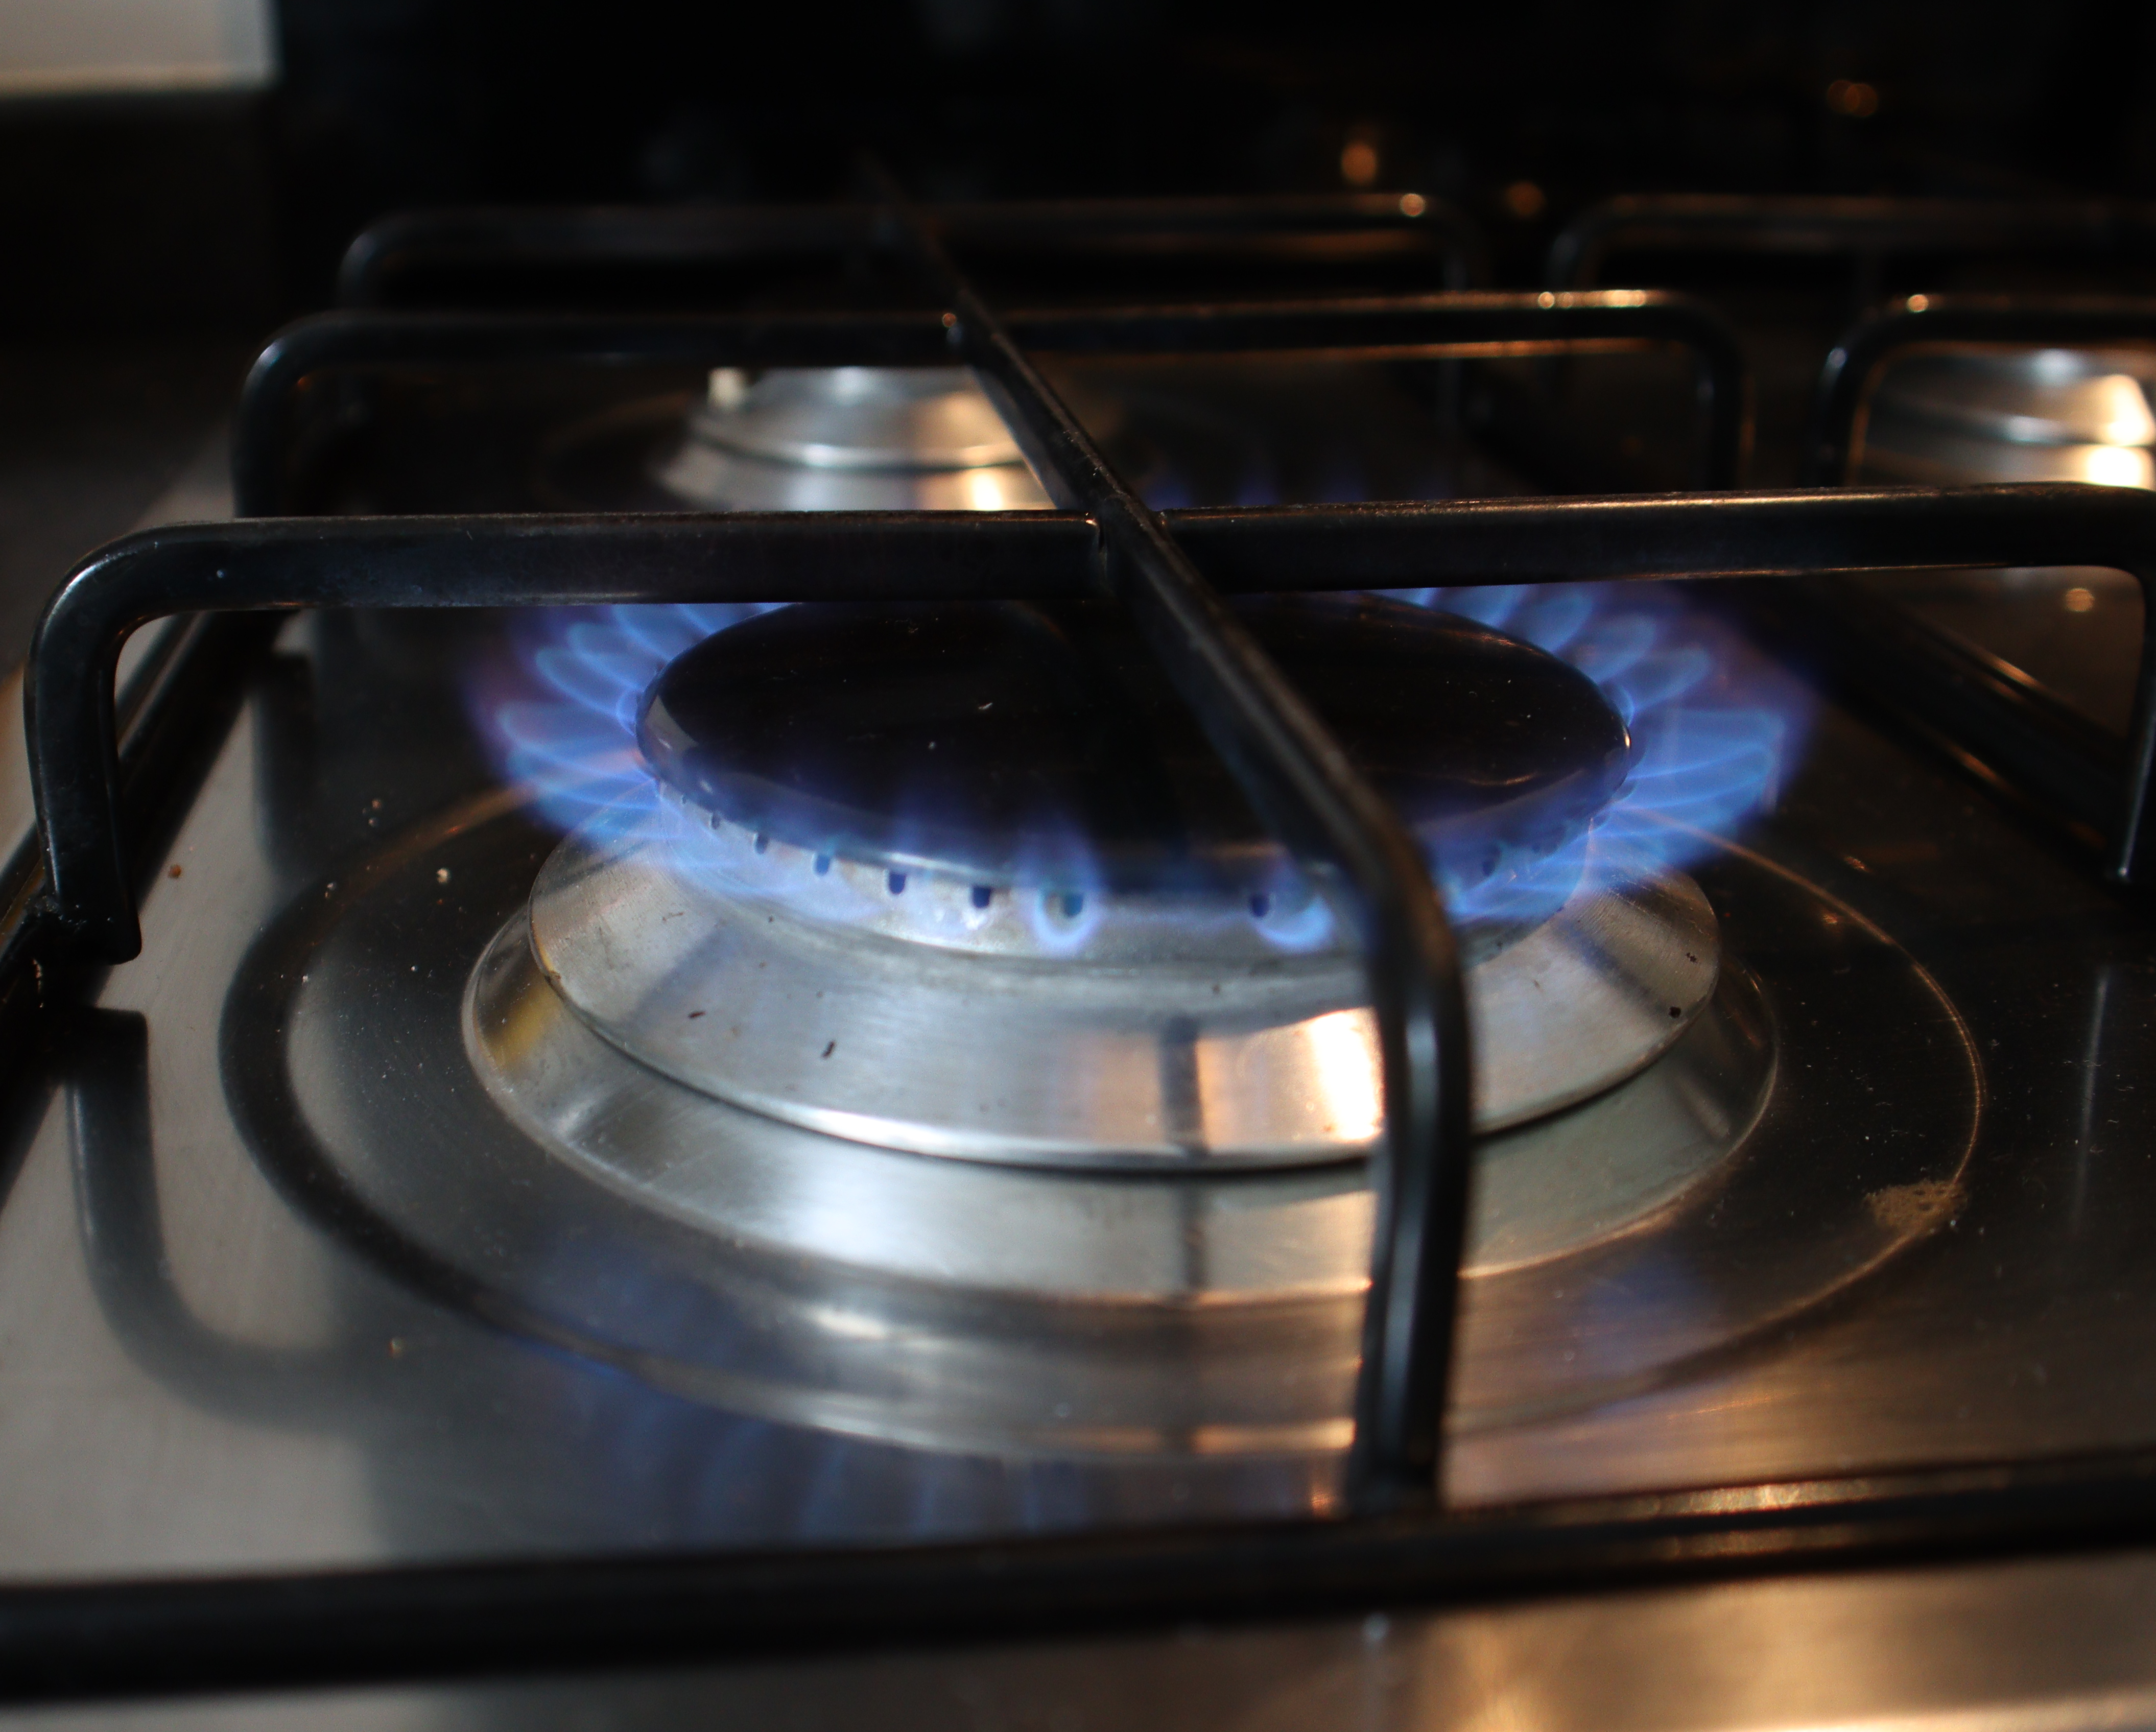 Energy Gas Cooker Debate